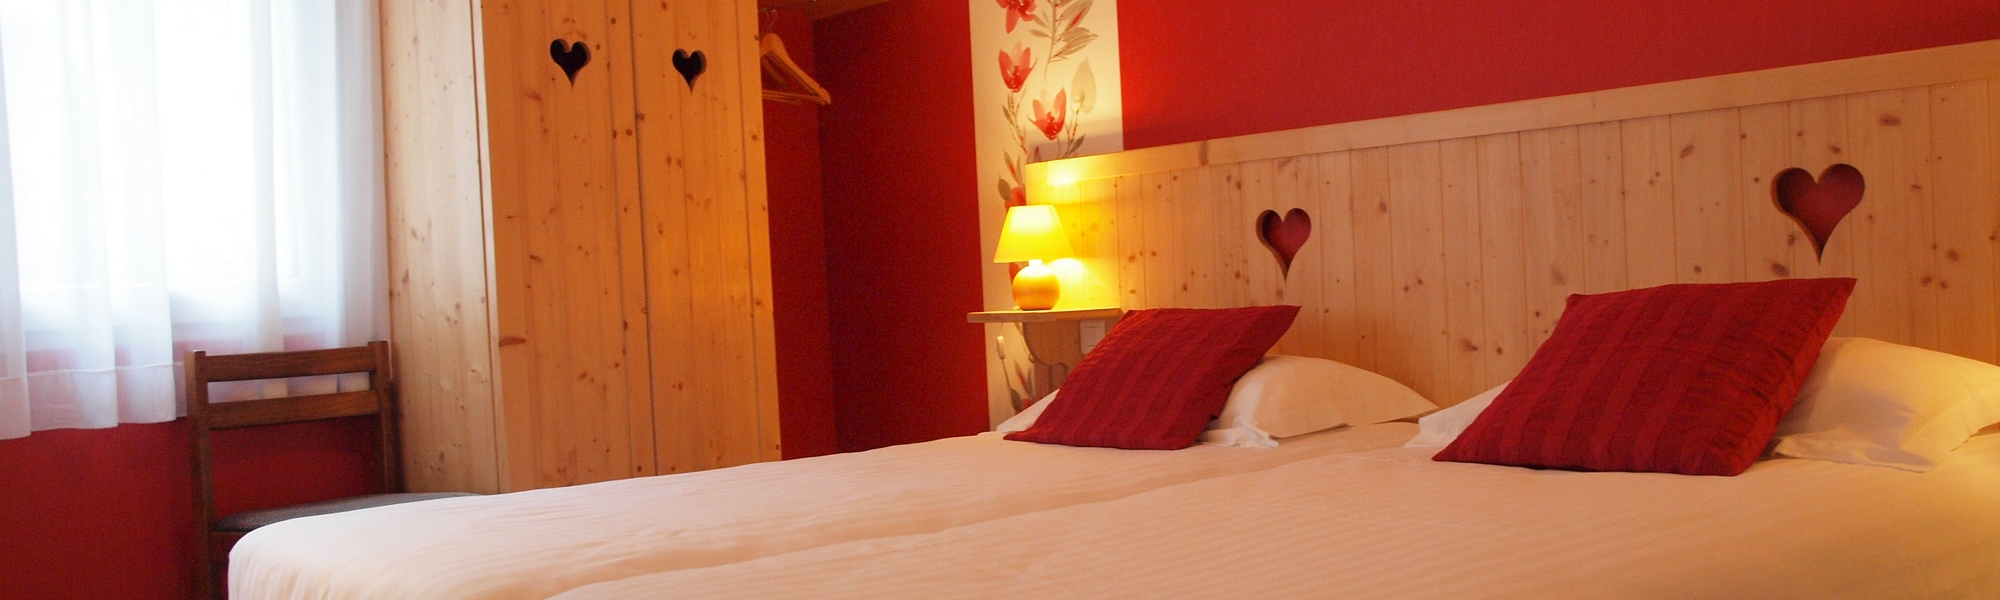 comfort double room hotel Mont dore